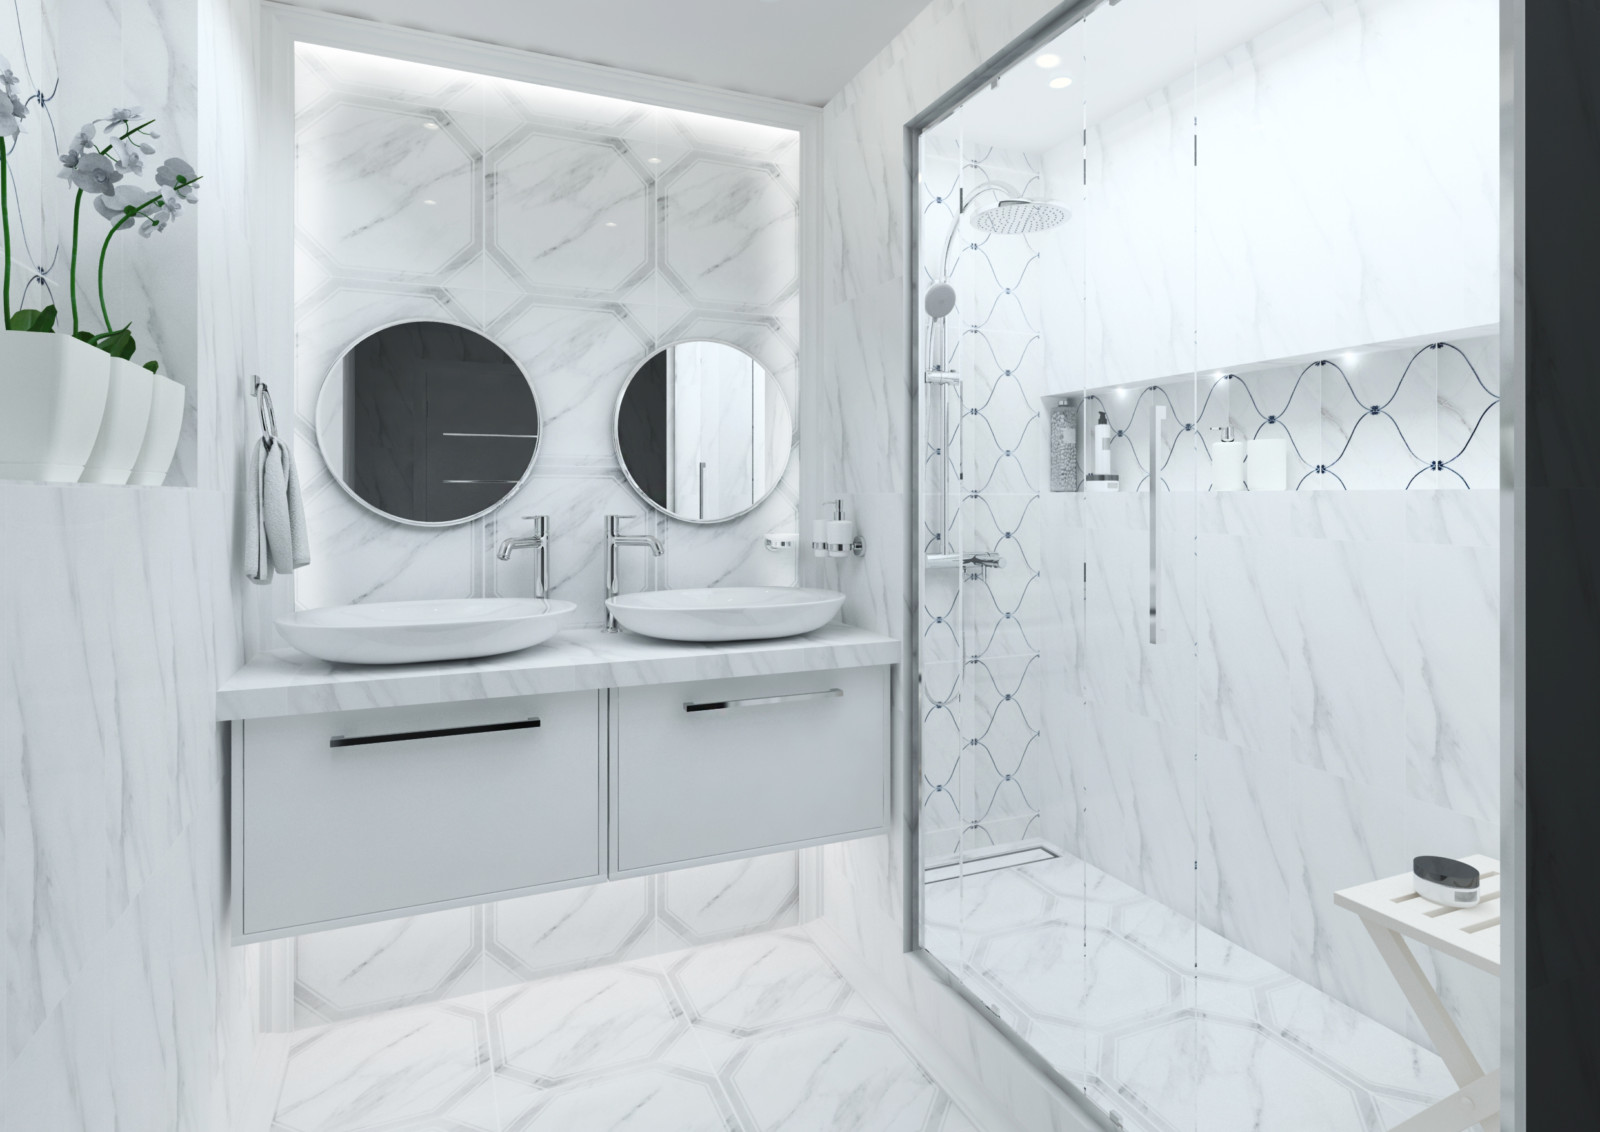 Ванные комнаты | Готовые дизайн-проекты интерьера | сервис ГИГАДОМ